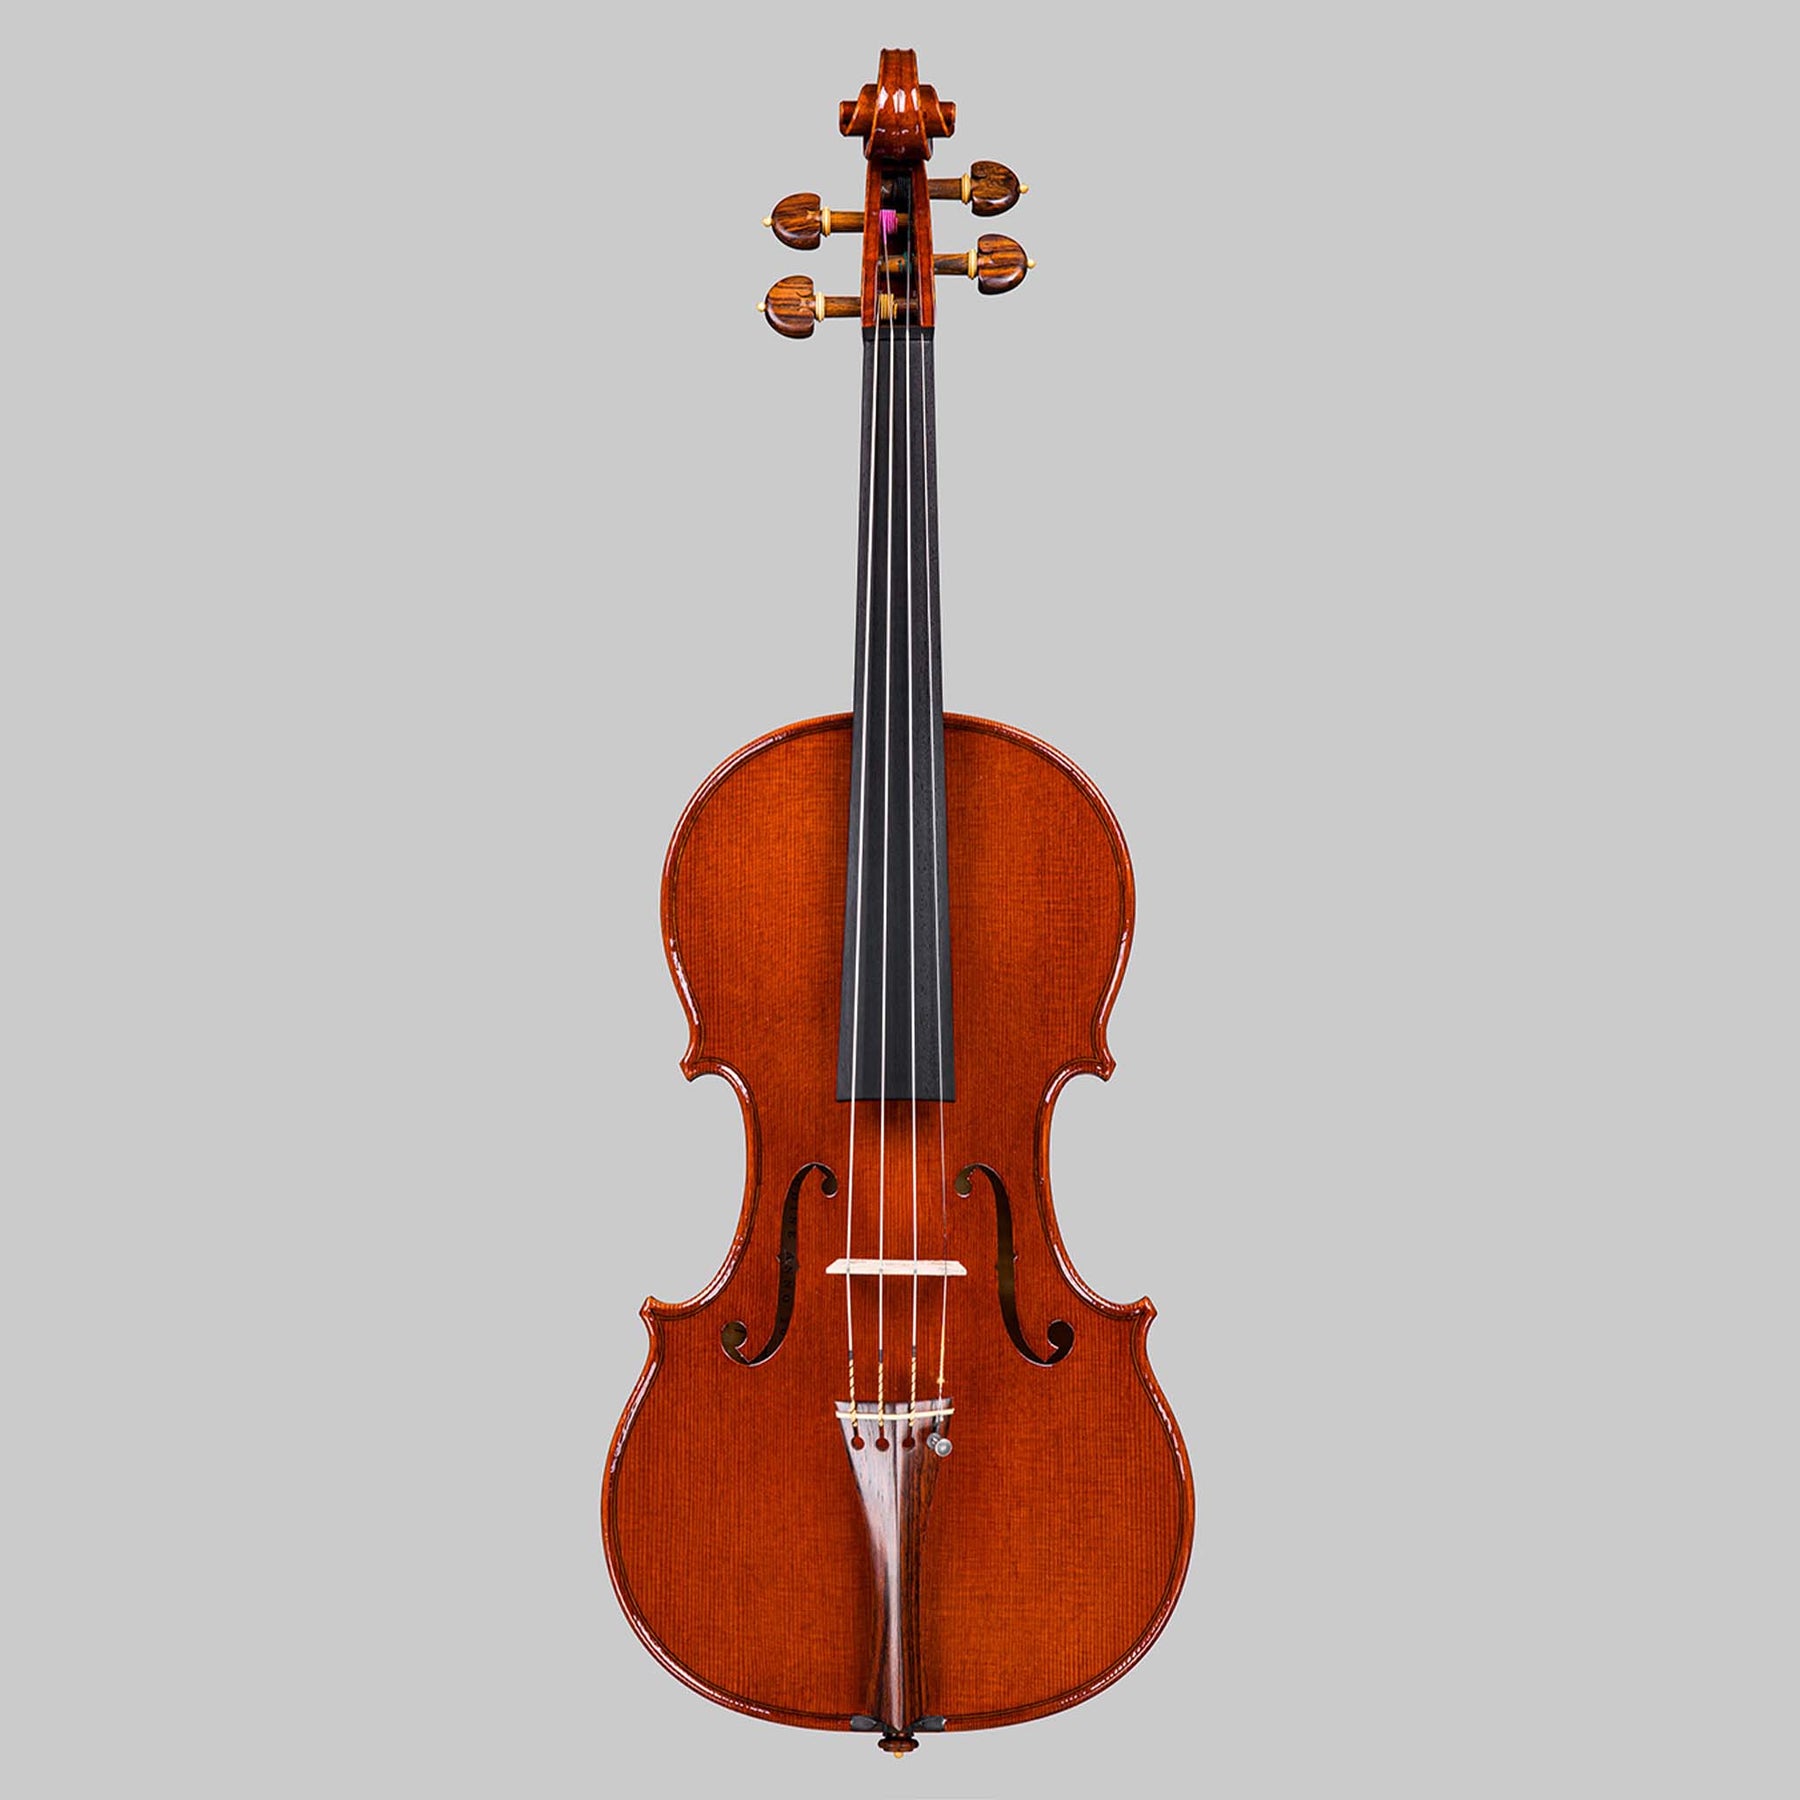 Marco Cargnelutti "Il Toscano" 2022 Violin